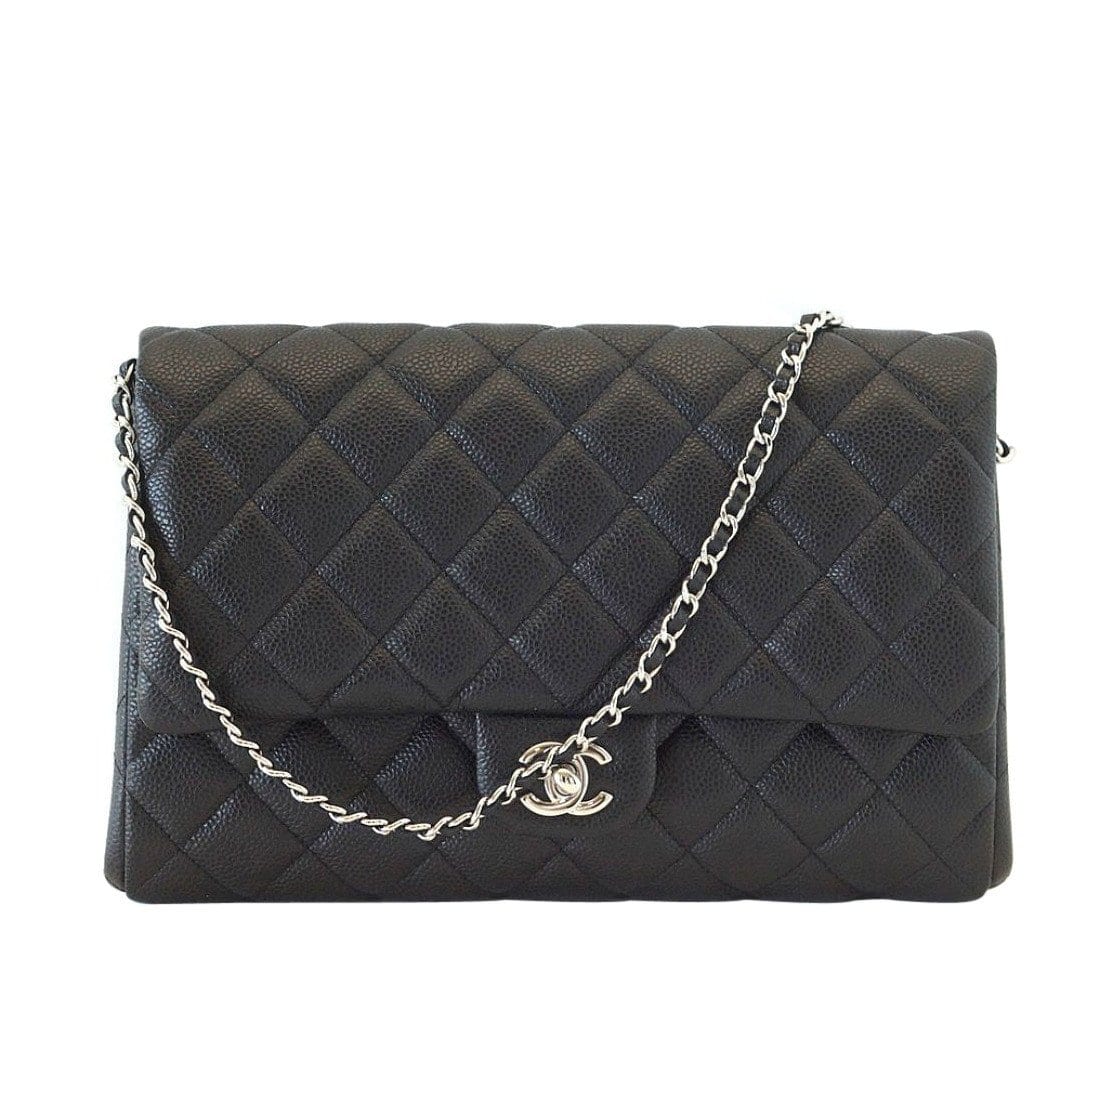 Chanel Bag Flap Flat Black Caviar Clutch / Shoulder Bag - mightychic